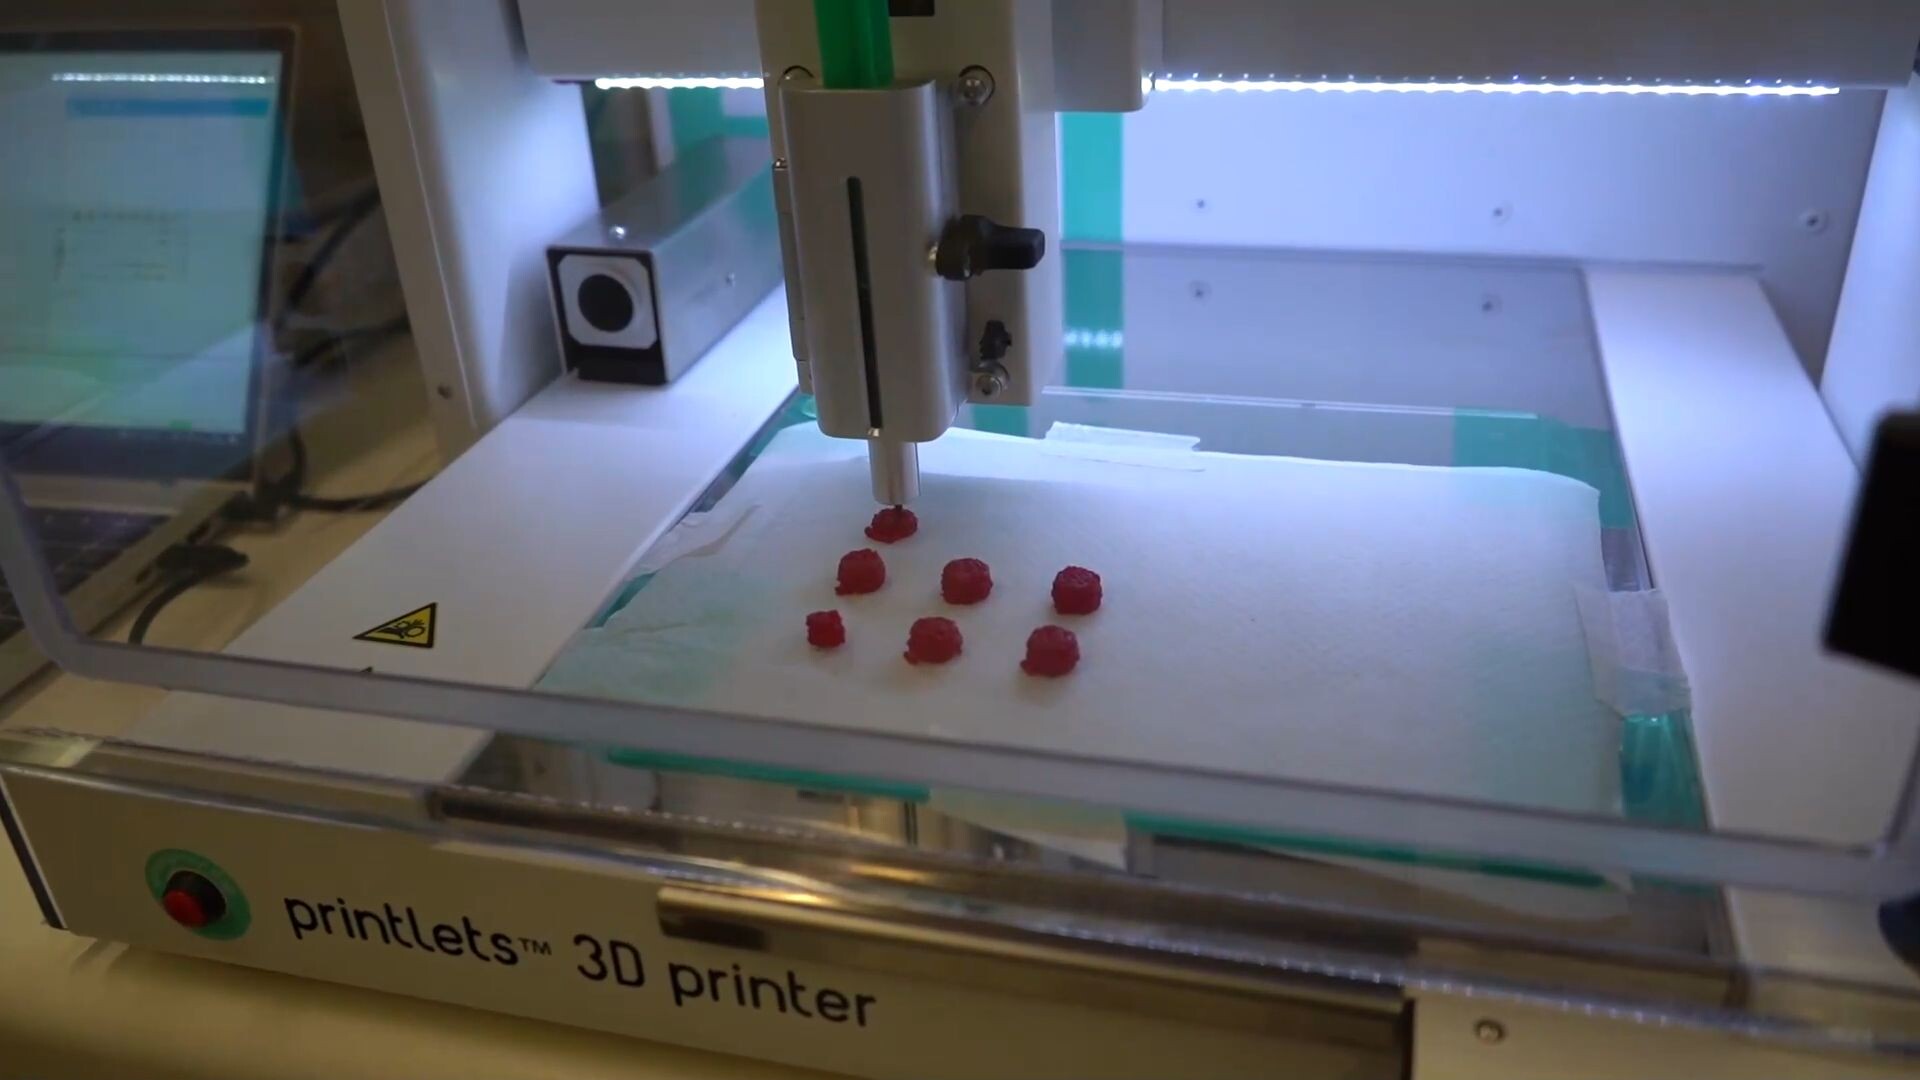 รพ.สเปนใช้เครื่องพิมพ์ 3D ผลิต 'ยาเด็ก' เน้นกินง่าย ดึงดูดใจ